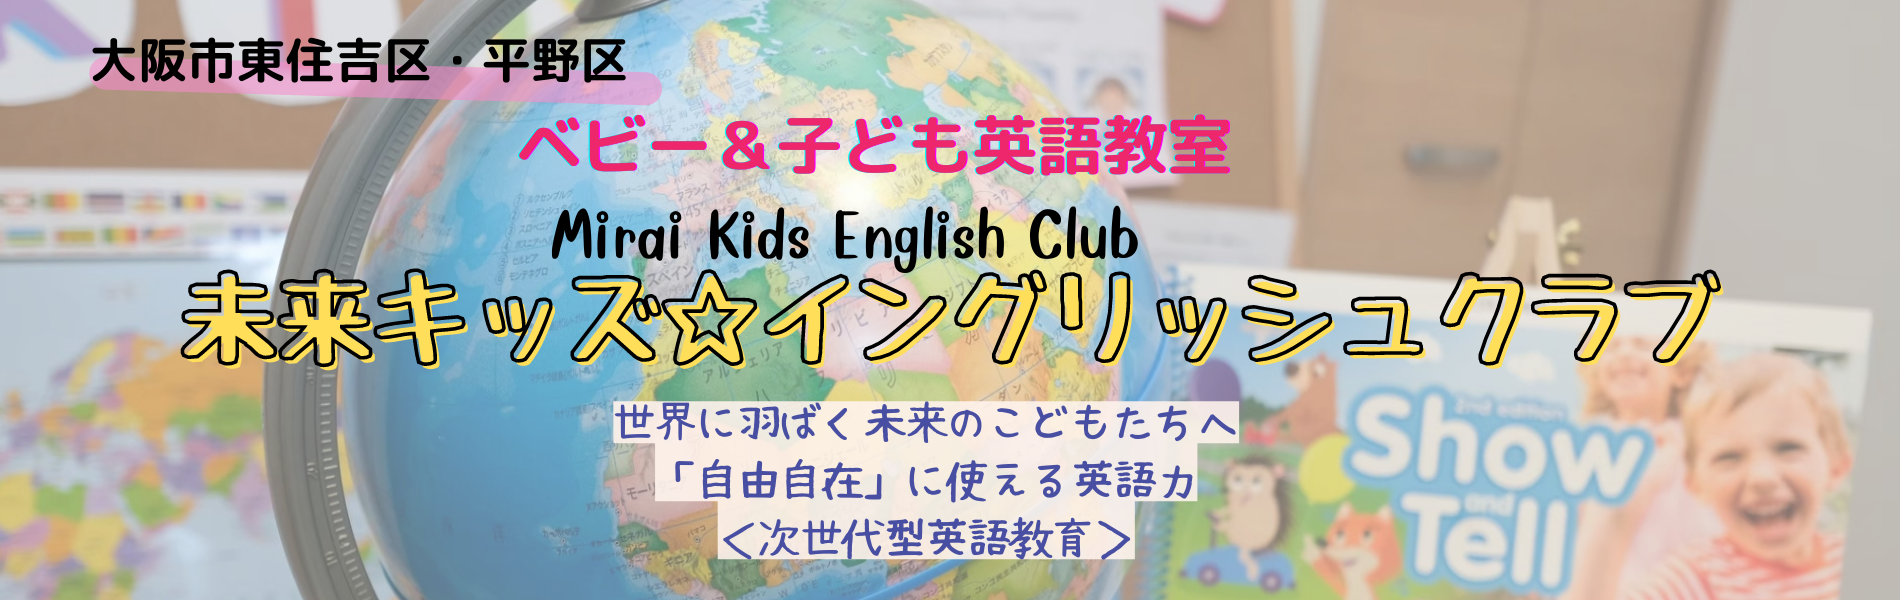 未来キッズ イングリッシュクラブ 子ども達の未来を切り開く次世代型英語教育